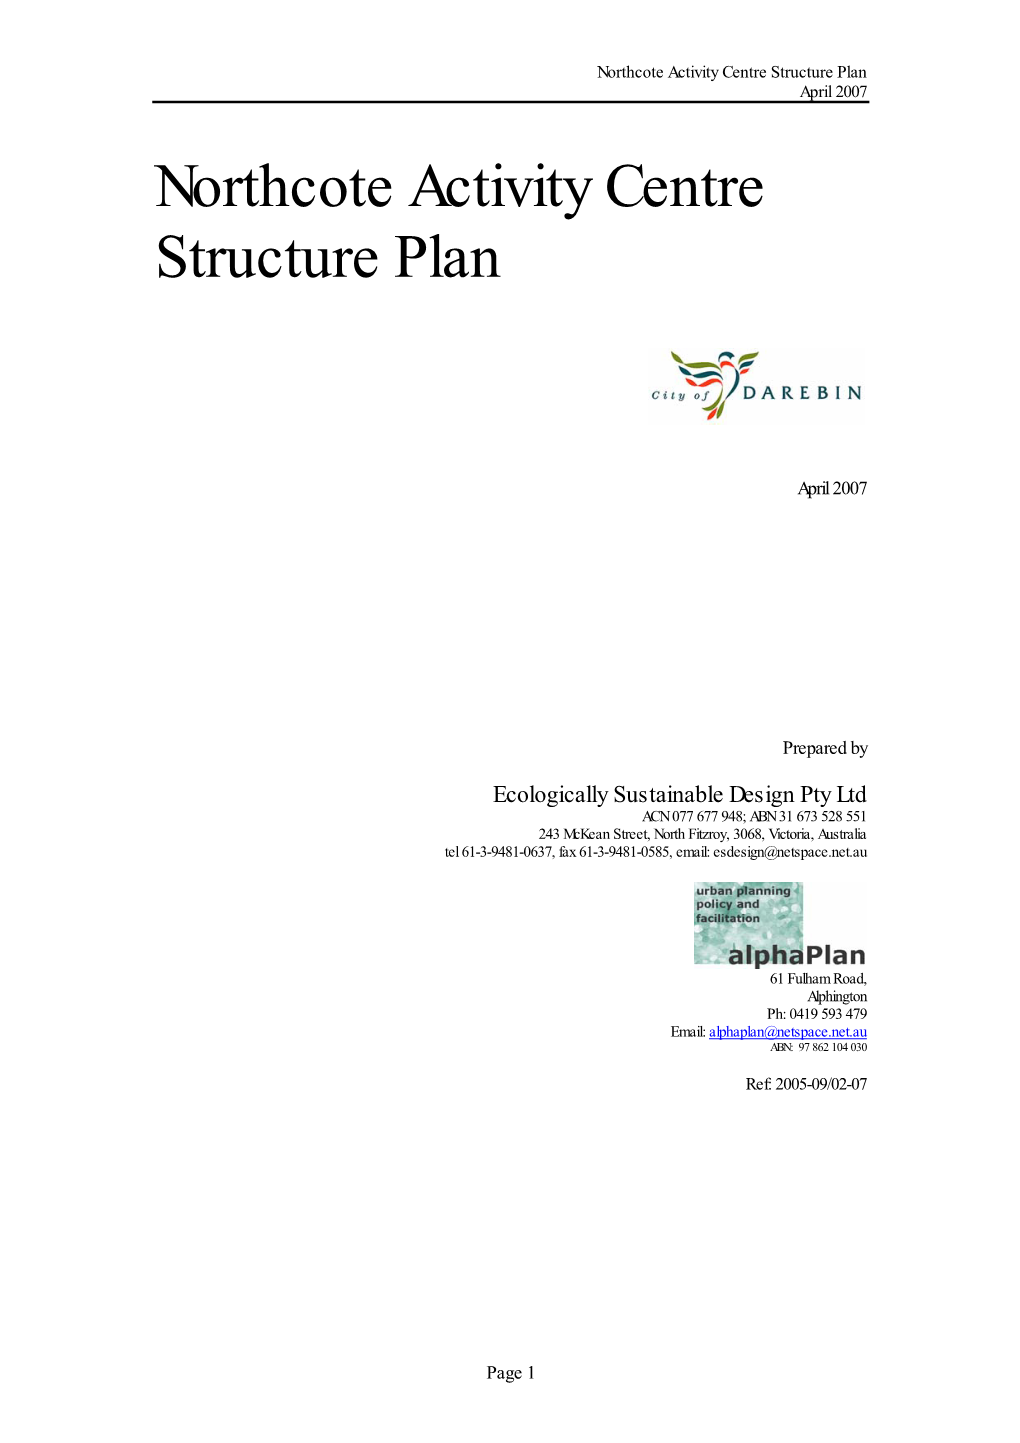 Northcote Activity Centre Structure Plan April 2007